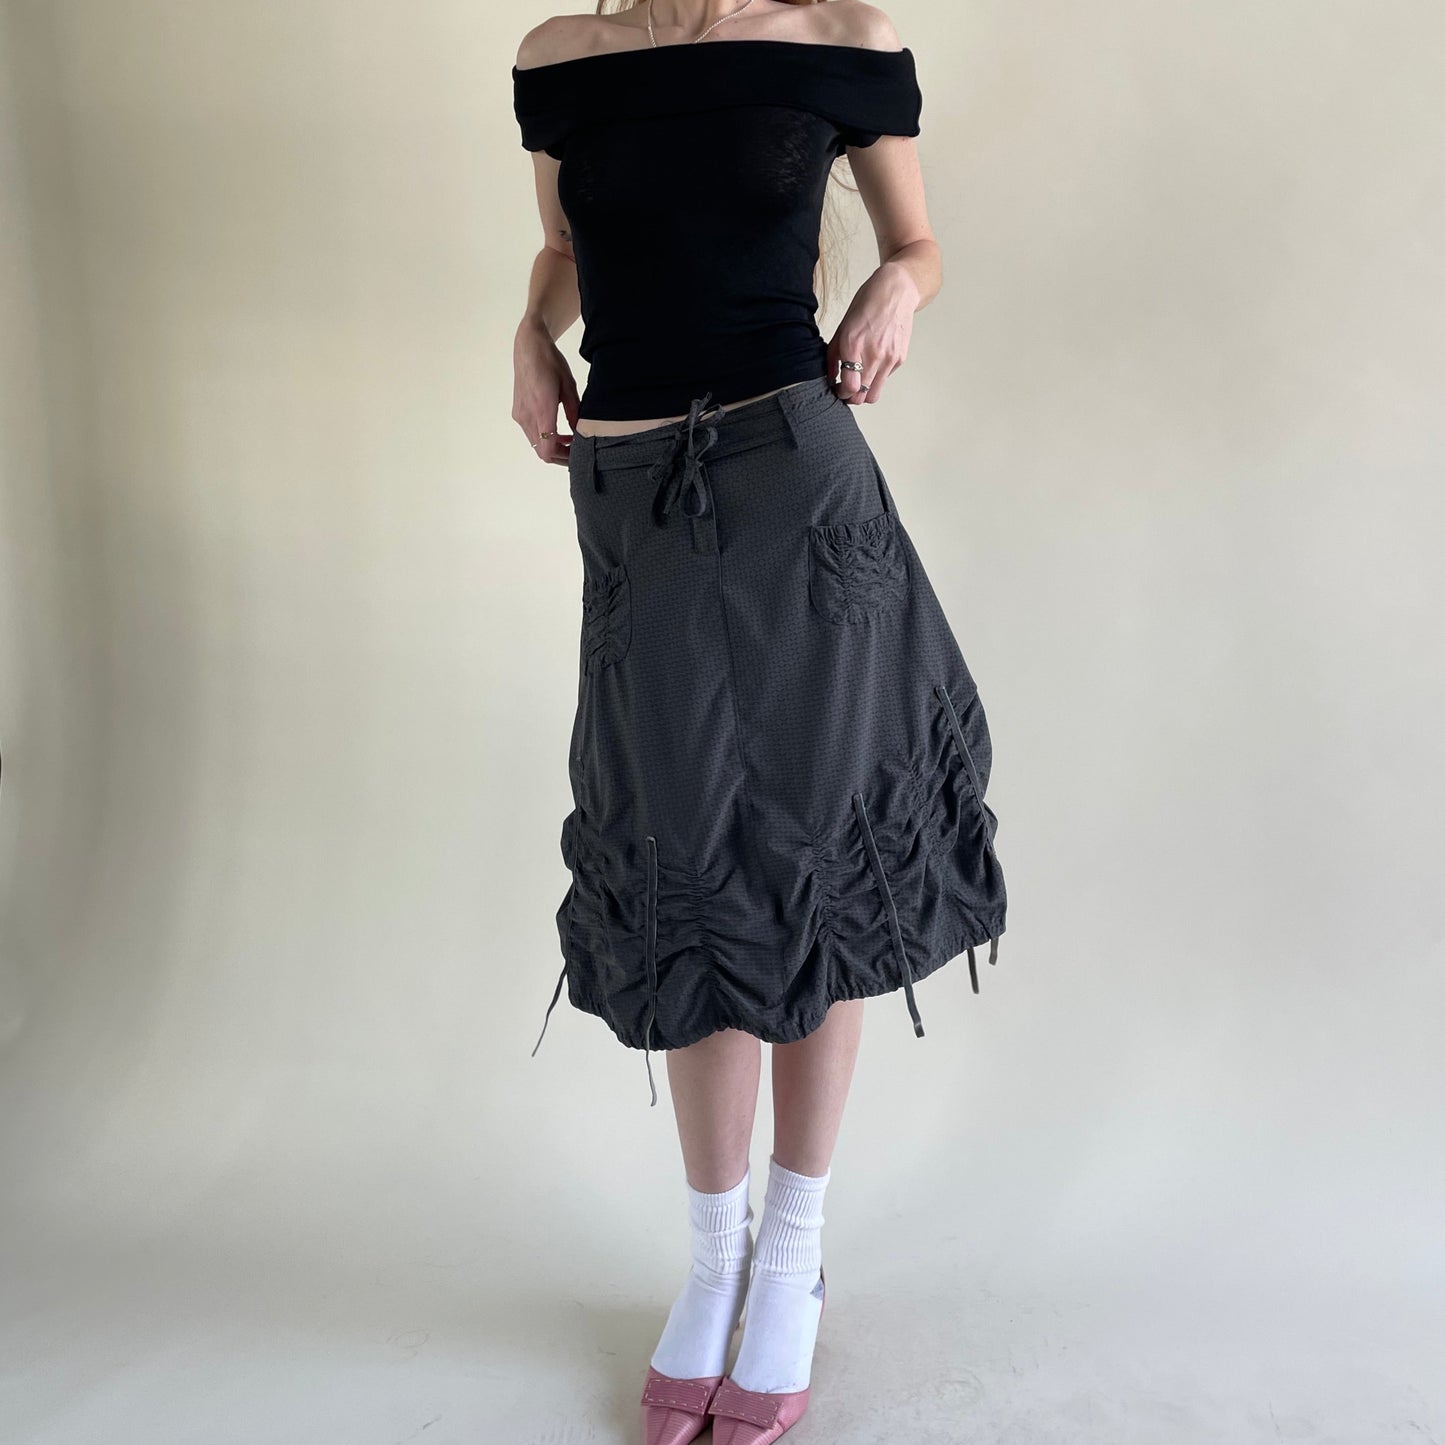 tech skirt